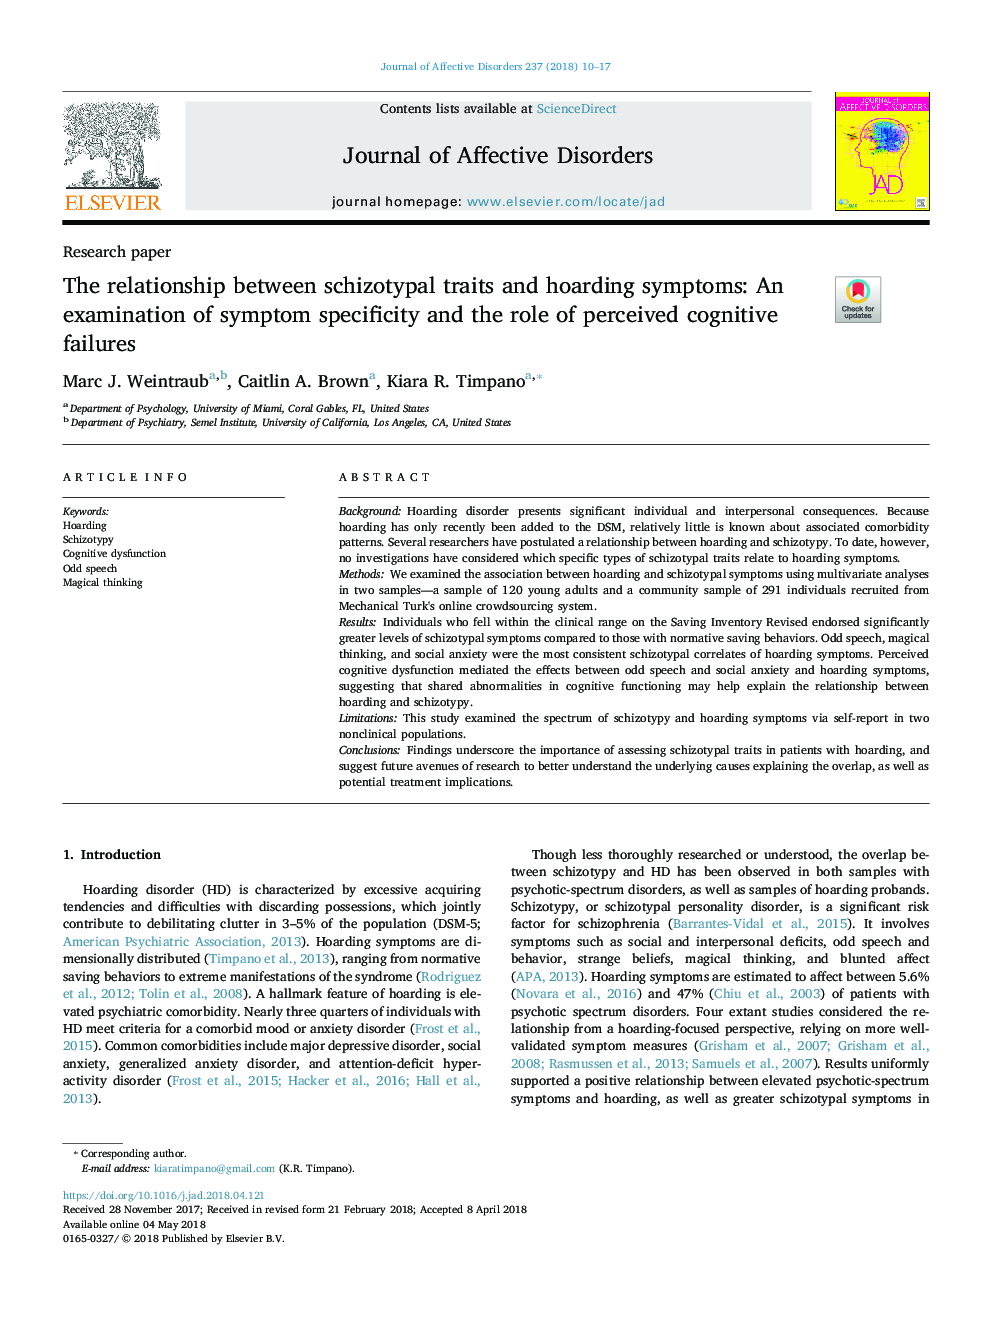 رابطه بین صفات اسکیزوتایپال و علائم نگهداری: بررسی خصوصیات علامت و نقش نقص شناختی ادراک شده 